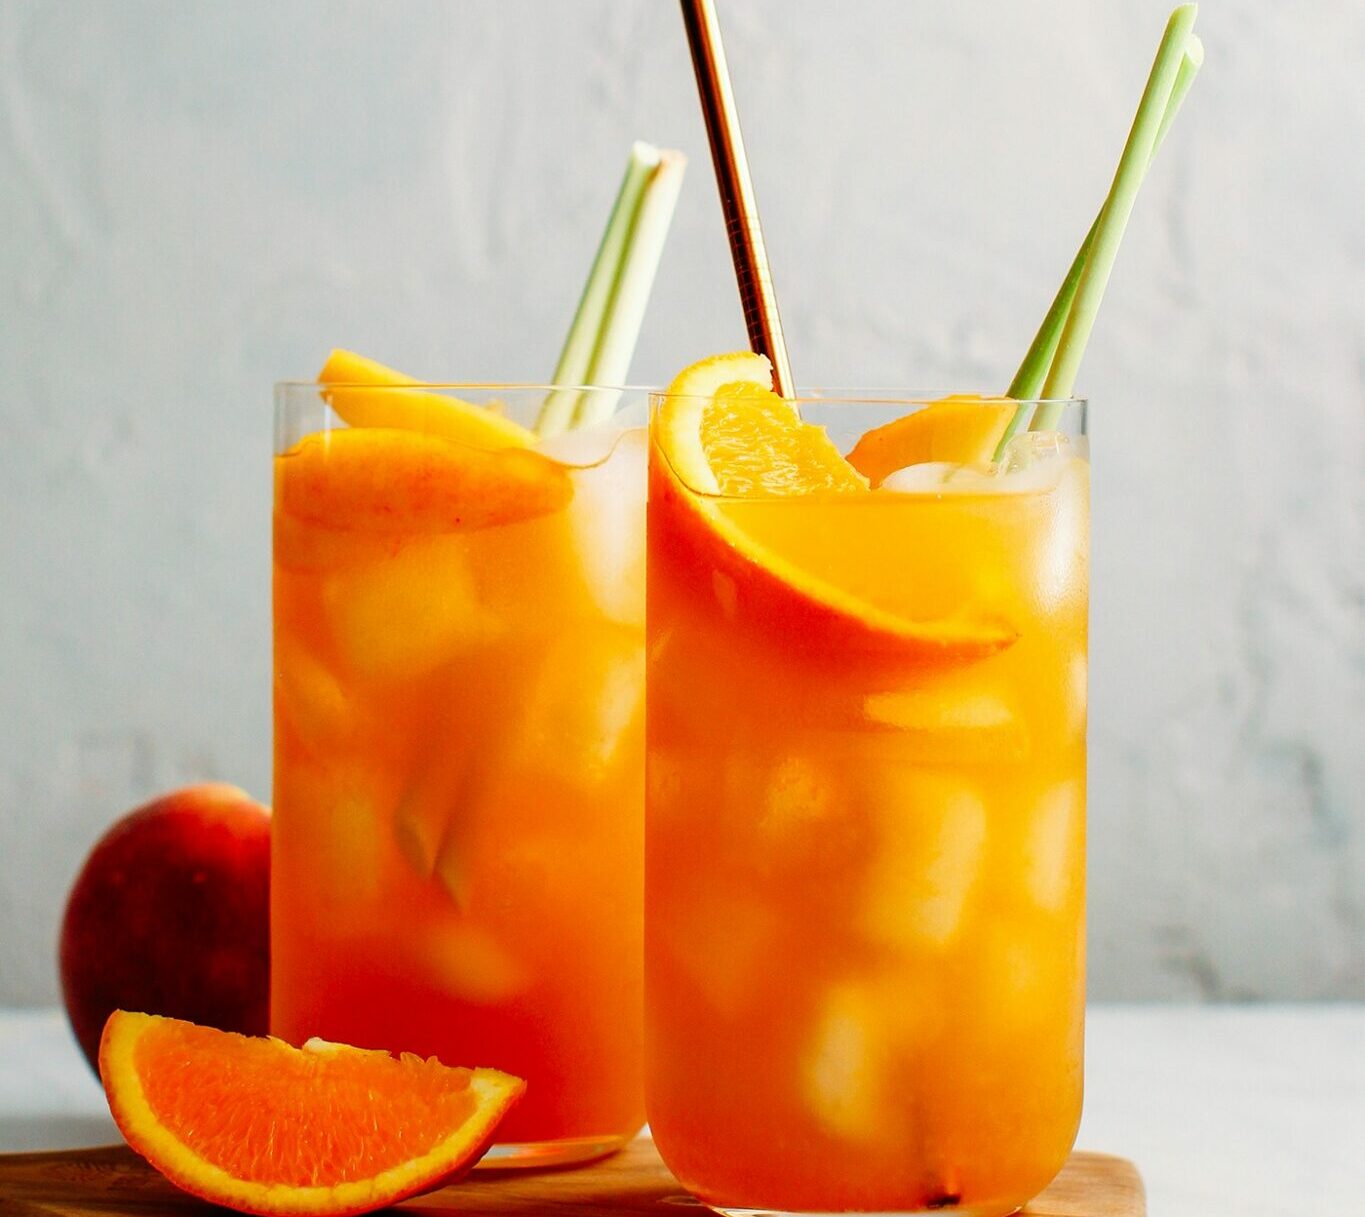 Trà đào cam sả là món uống được nhiều người yêu thích.